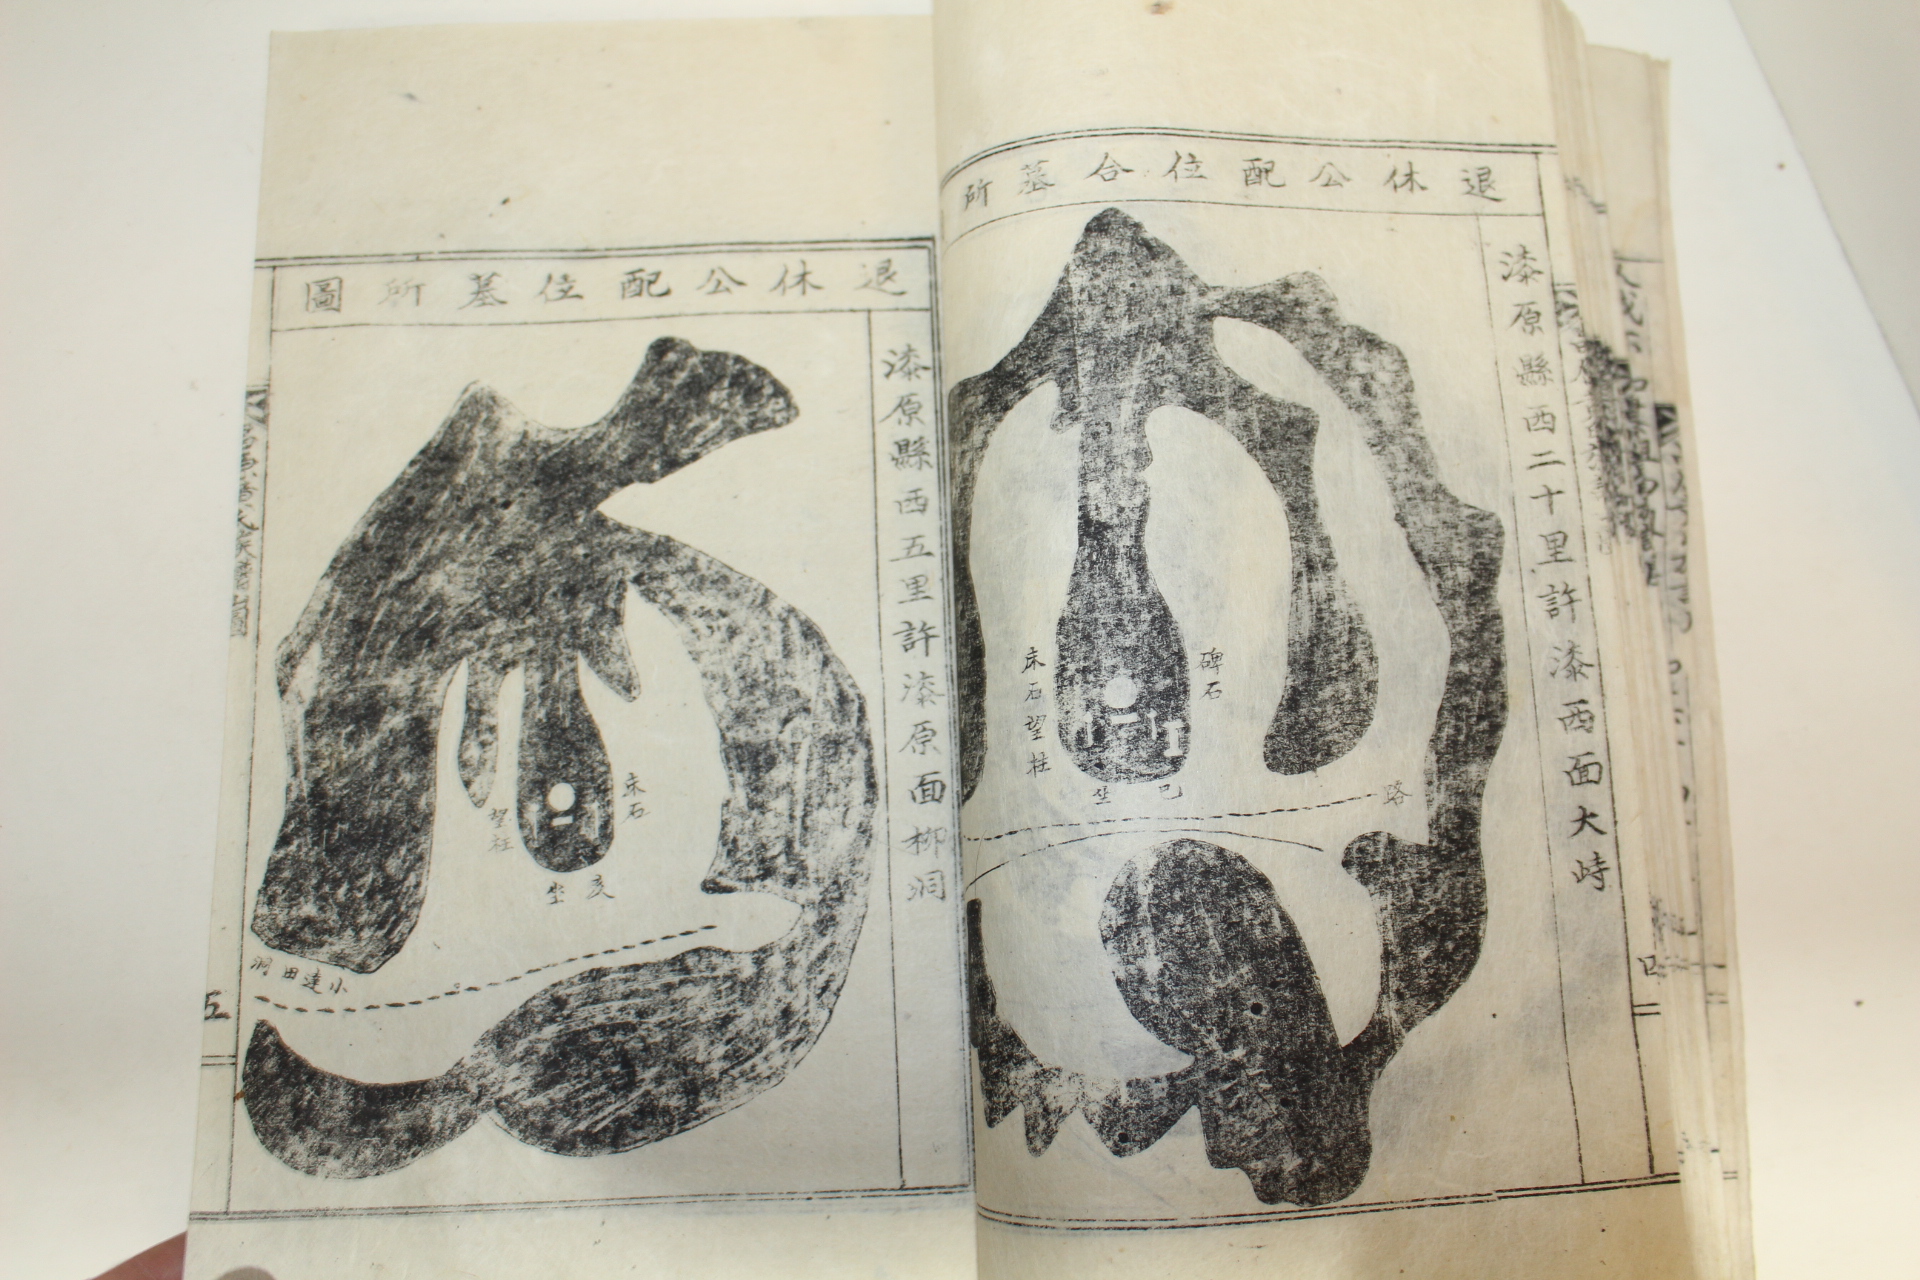 1957년 창원황씨족보(昌原黃氏族譜)권1 1책